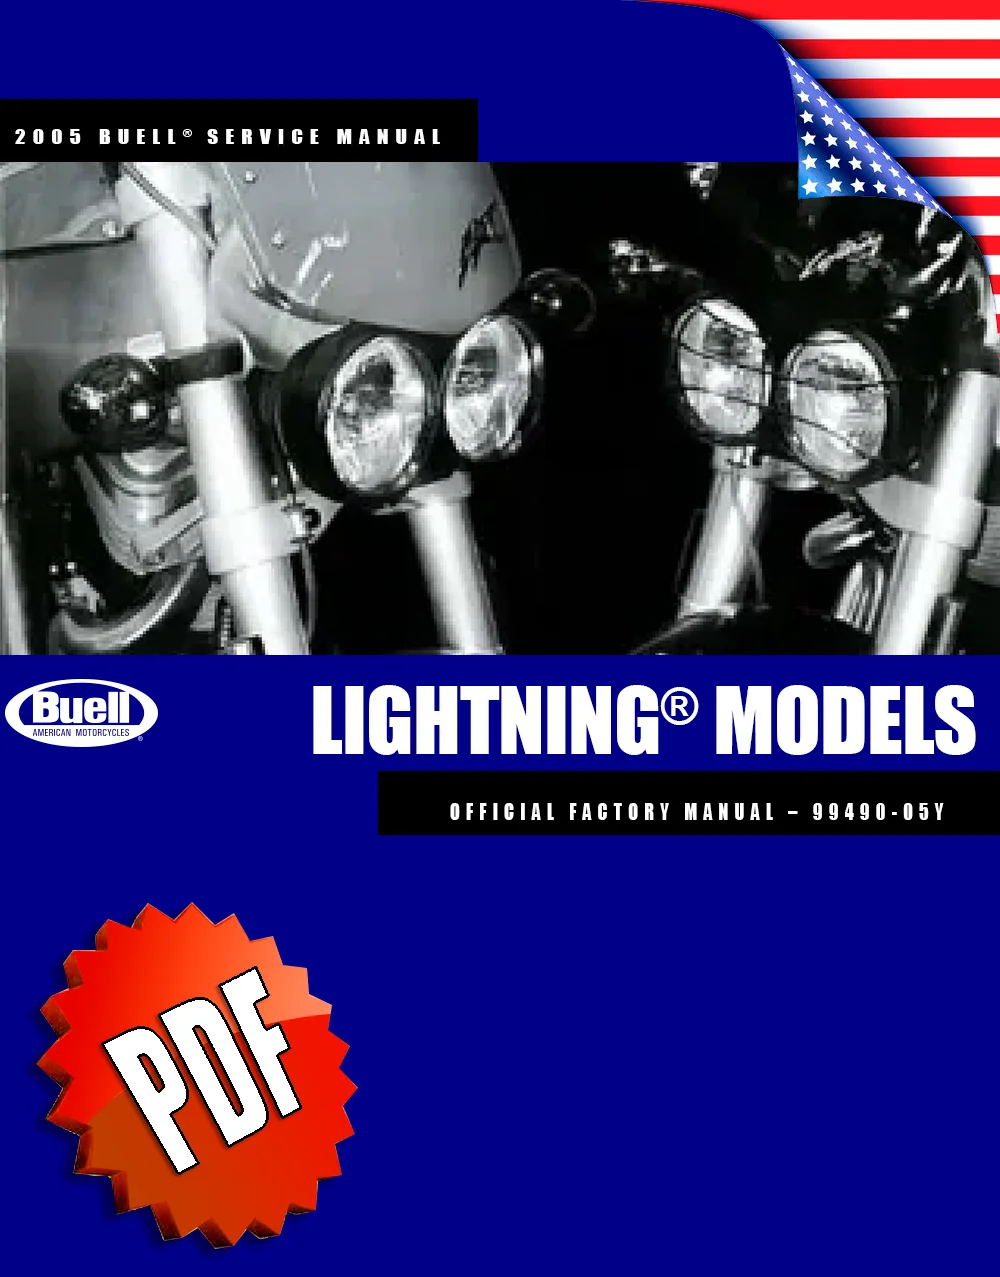 Buell Lightning Models 2005